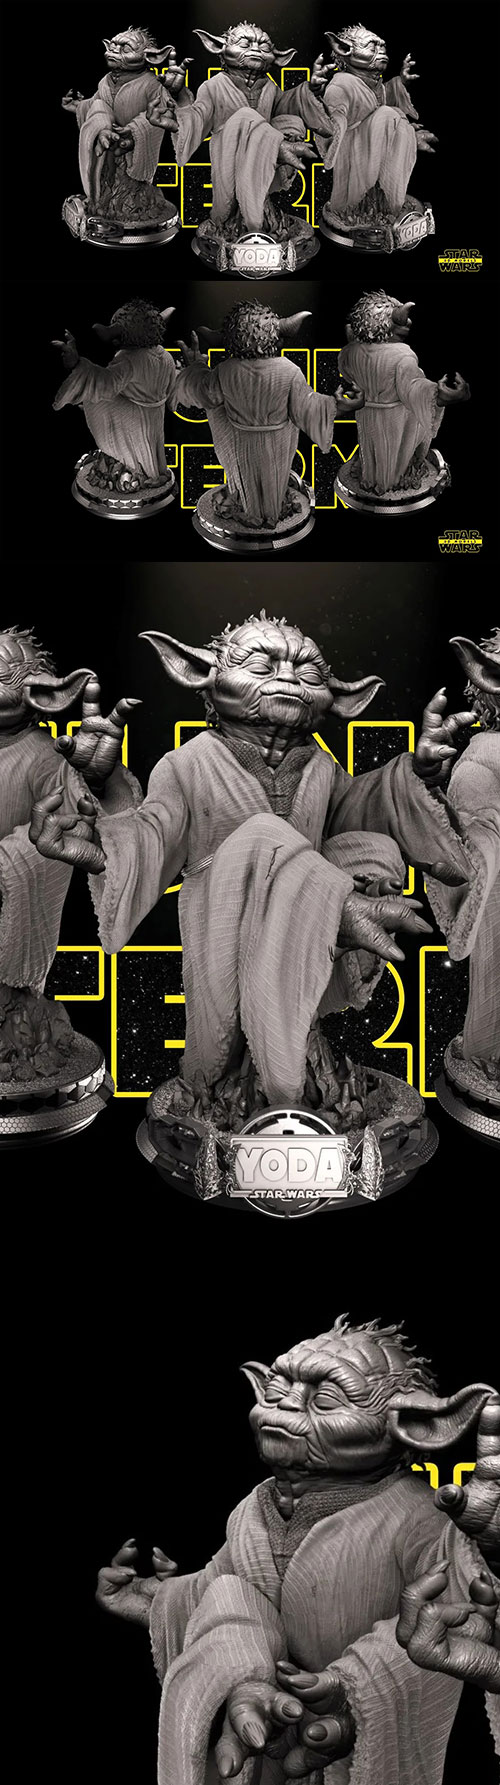 Yoda - Star Wars 3D Print